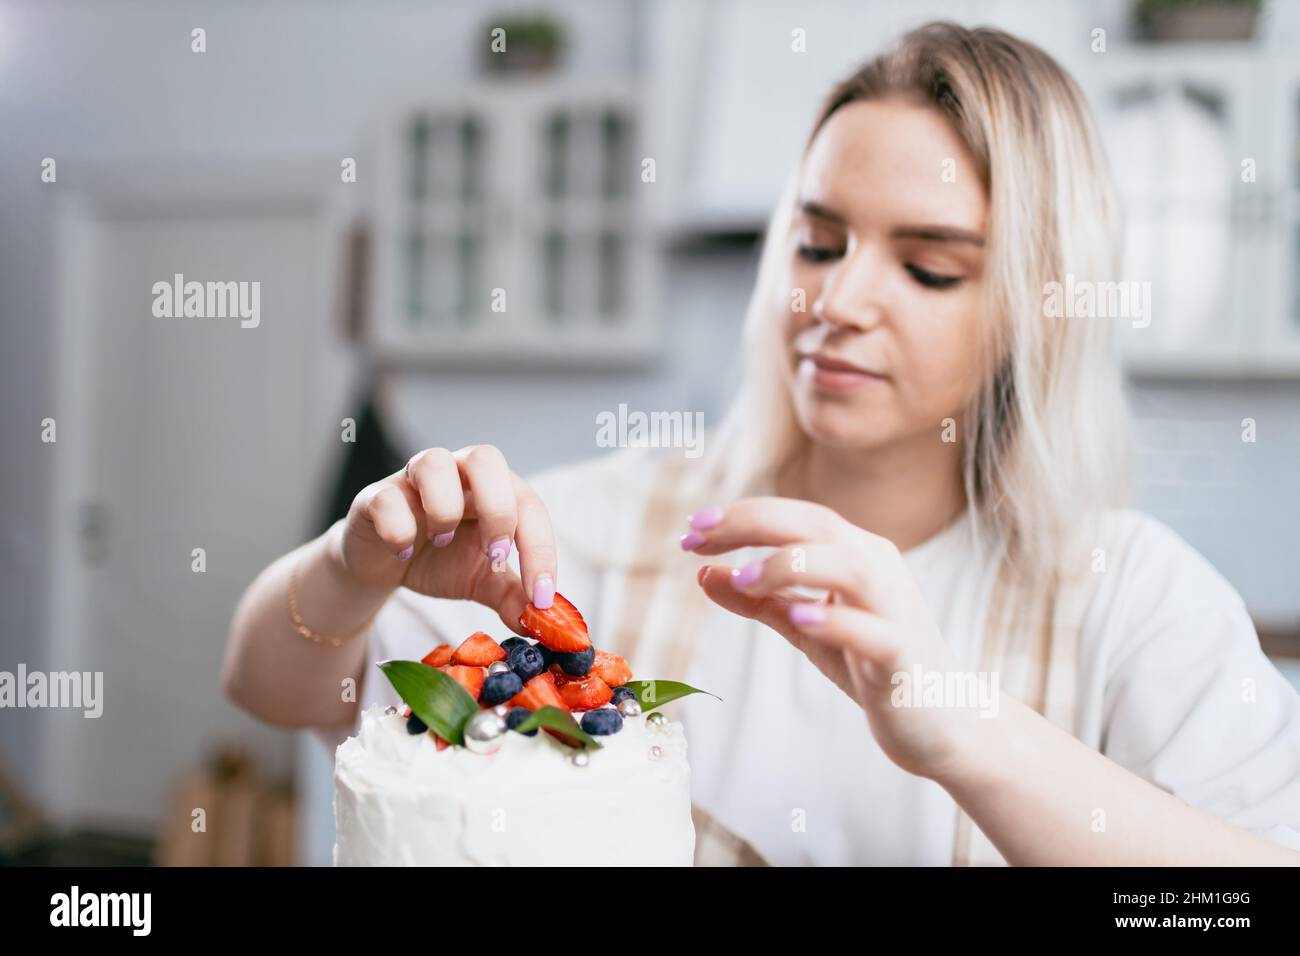 Konditor Konditor junge kaukasische Frau dekorieren Kuchen auf Küchentisch. Kuchen Cupcakes und süßes Dessert Stockfoto